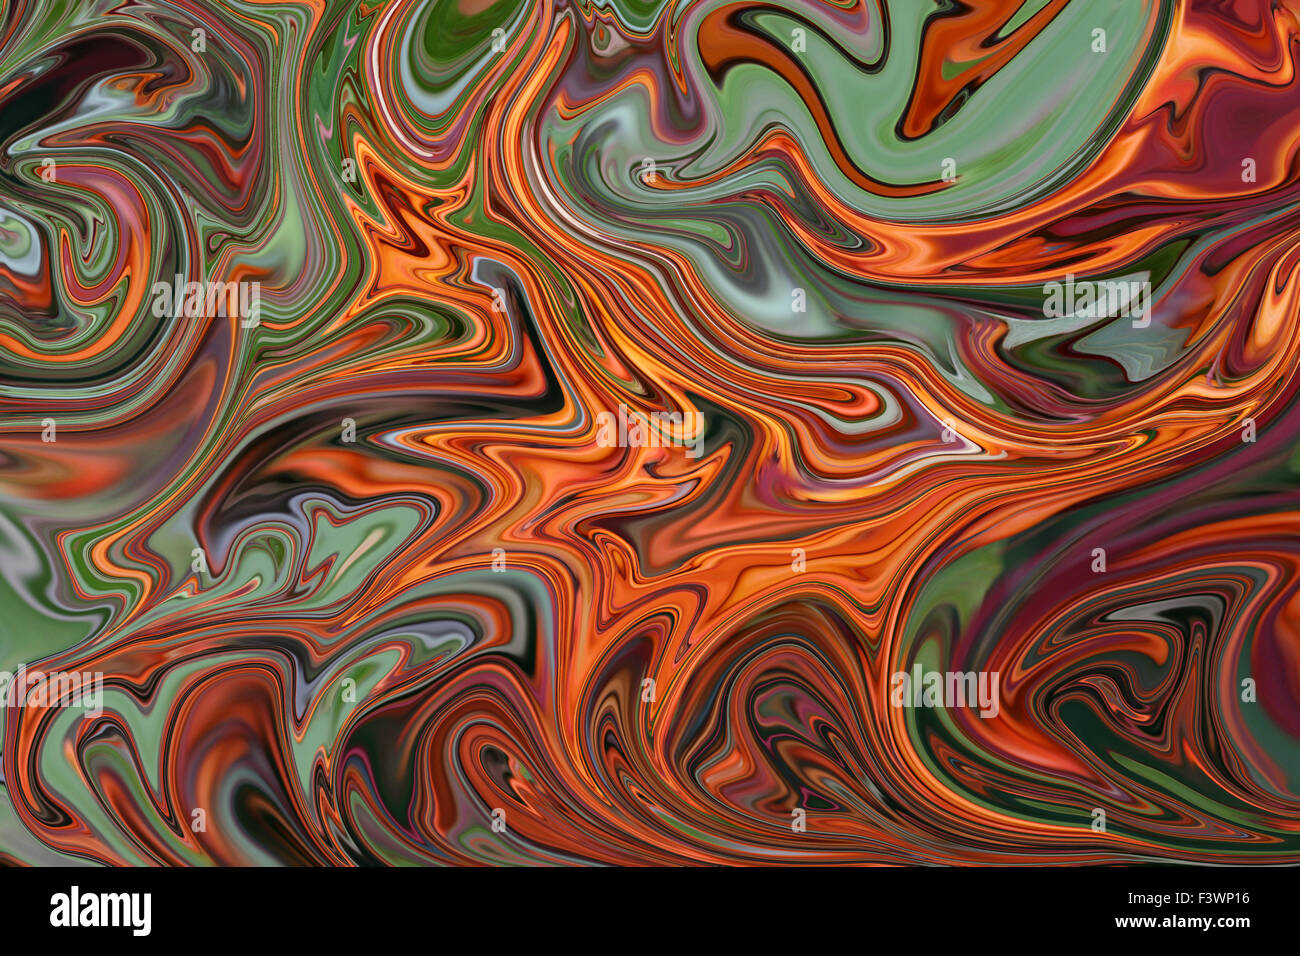 Abstrakt, basierend auf einem manipulierten Digitalfoto von orange Beeren Stockfoto